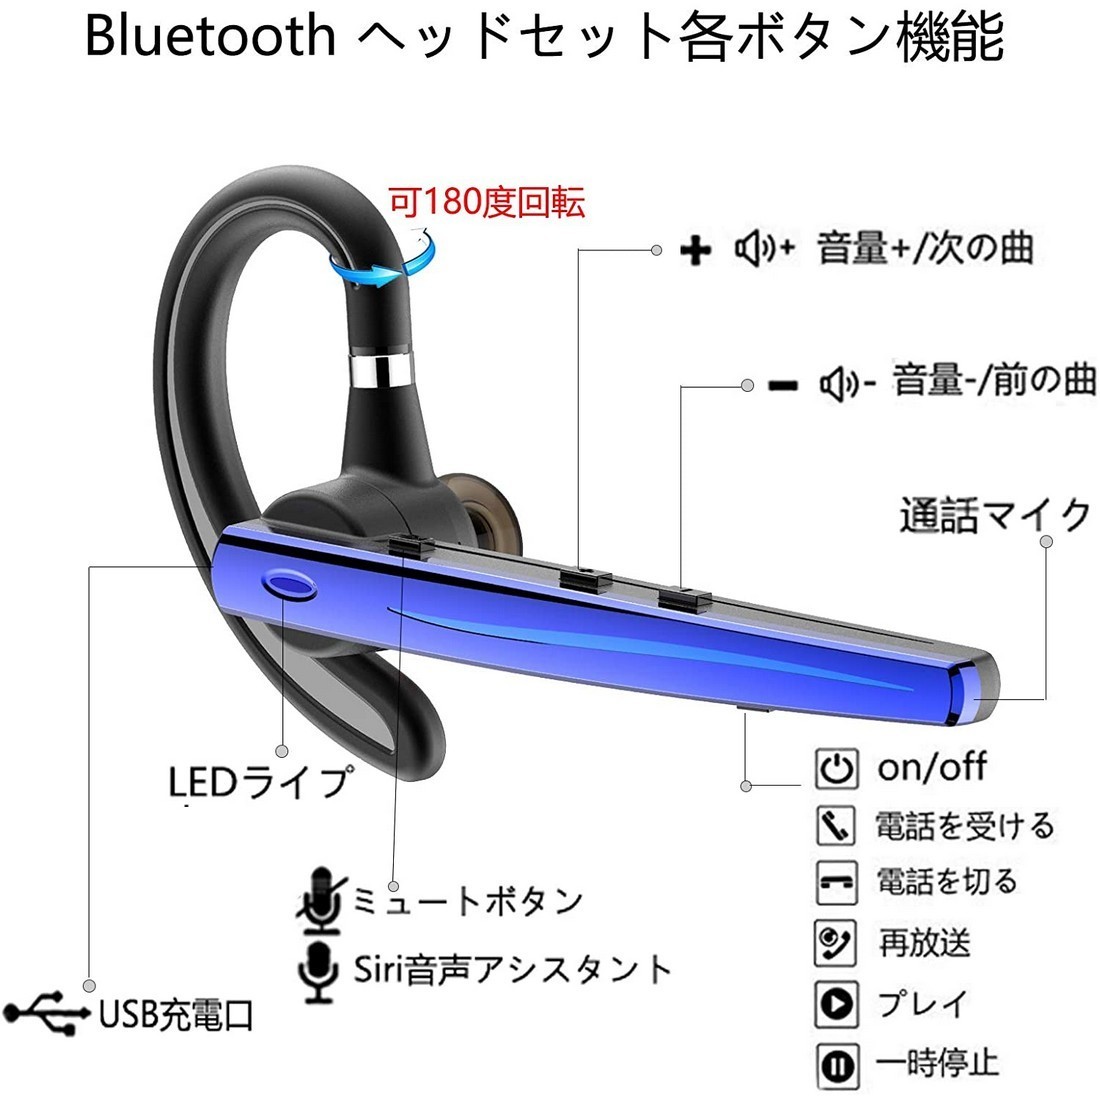 Bluetoothヘッドセット5.0 ワイヤレスブルートゥースヘッドセット高音質片耳内蔵マイクBluetoothイヤホン ハンズフリー通話_画像3